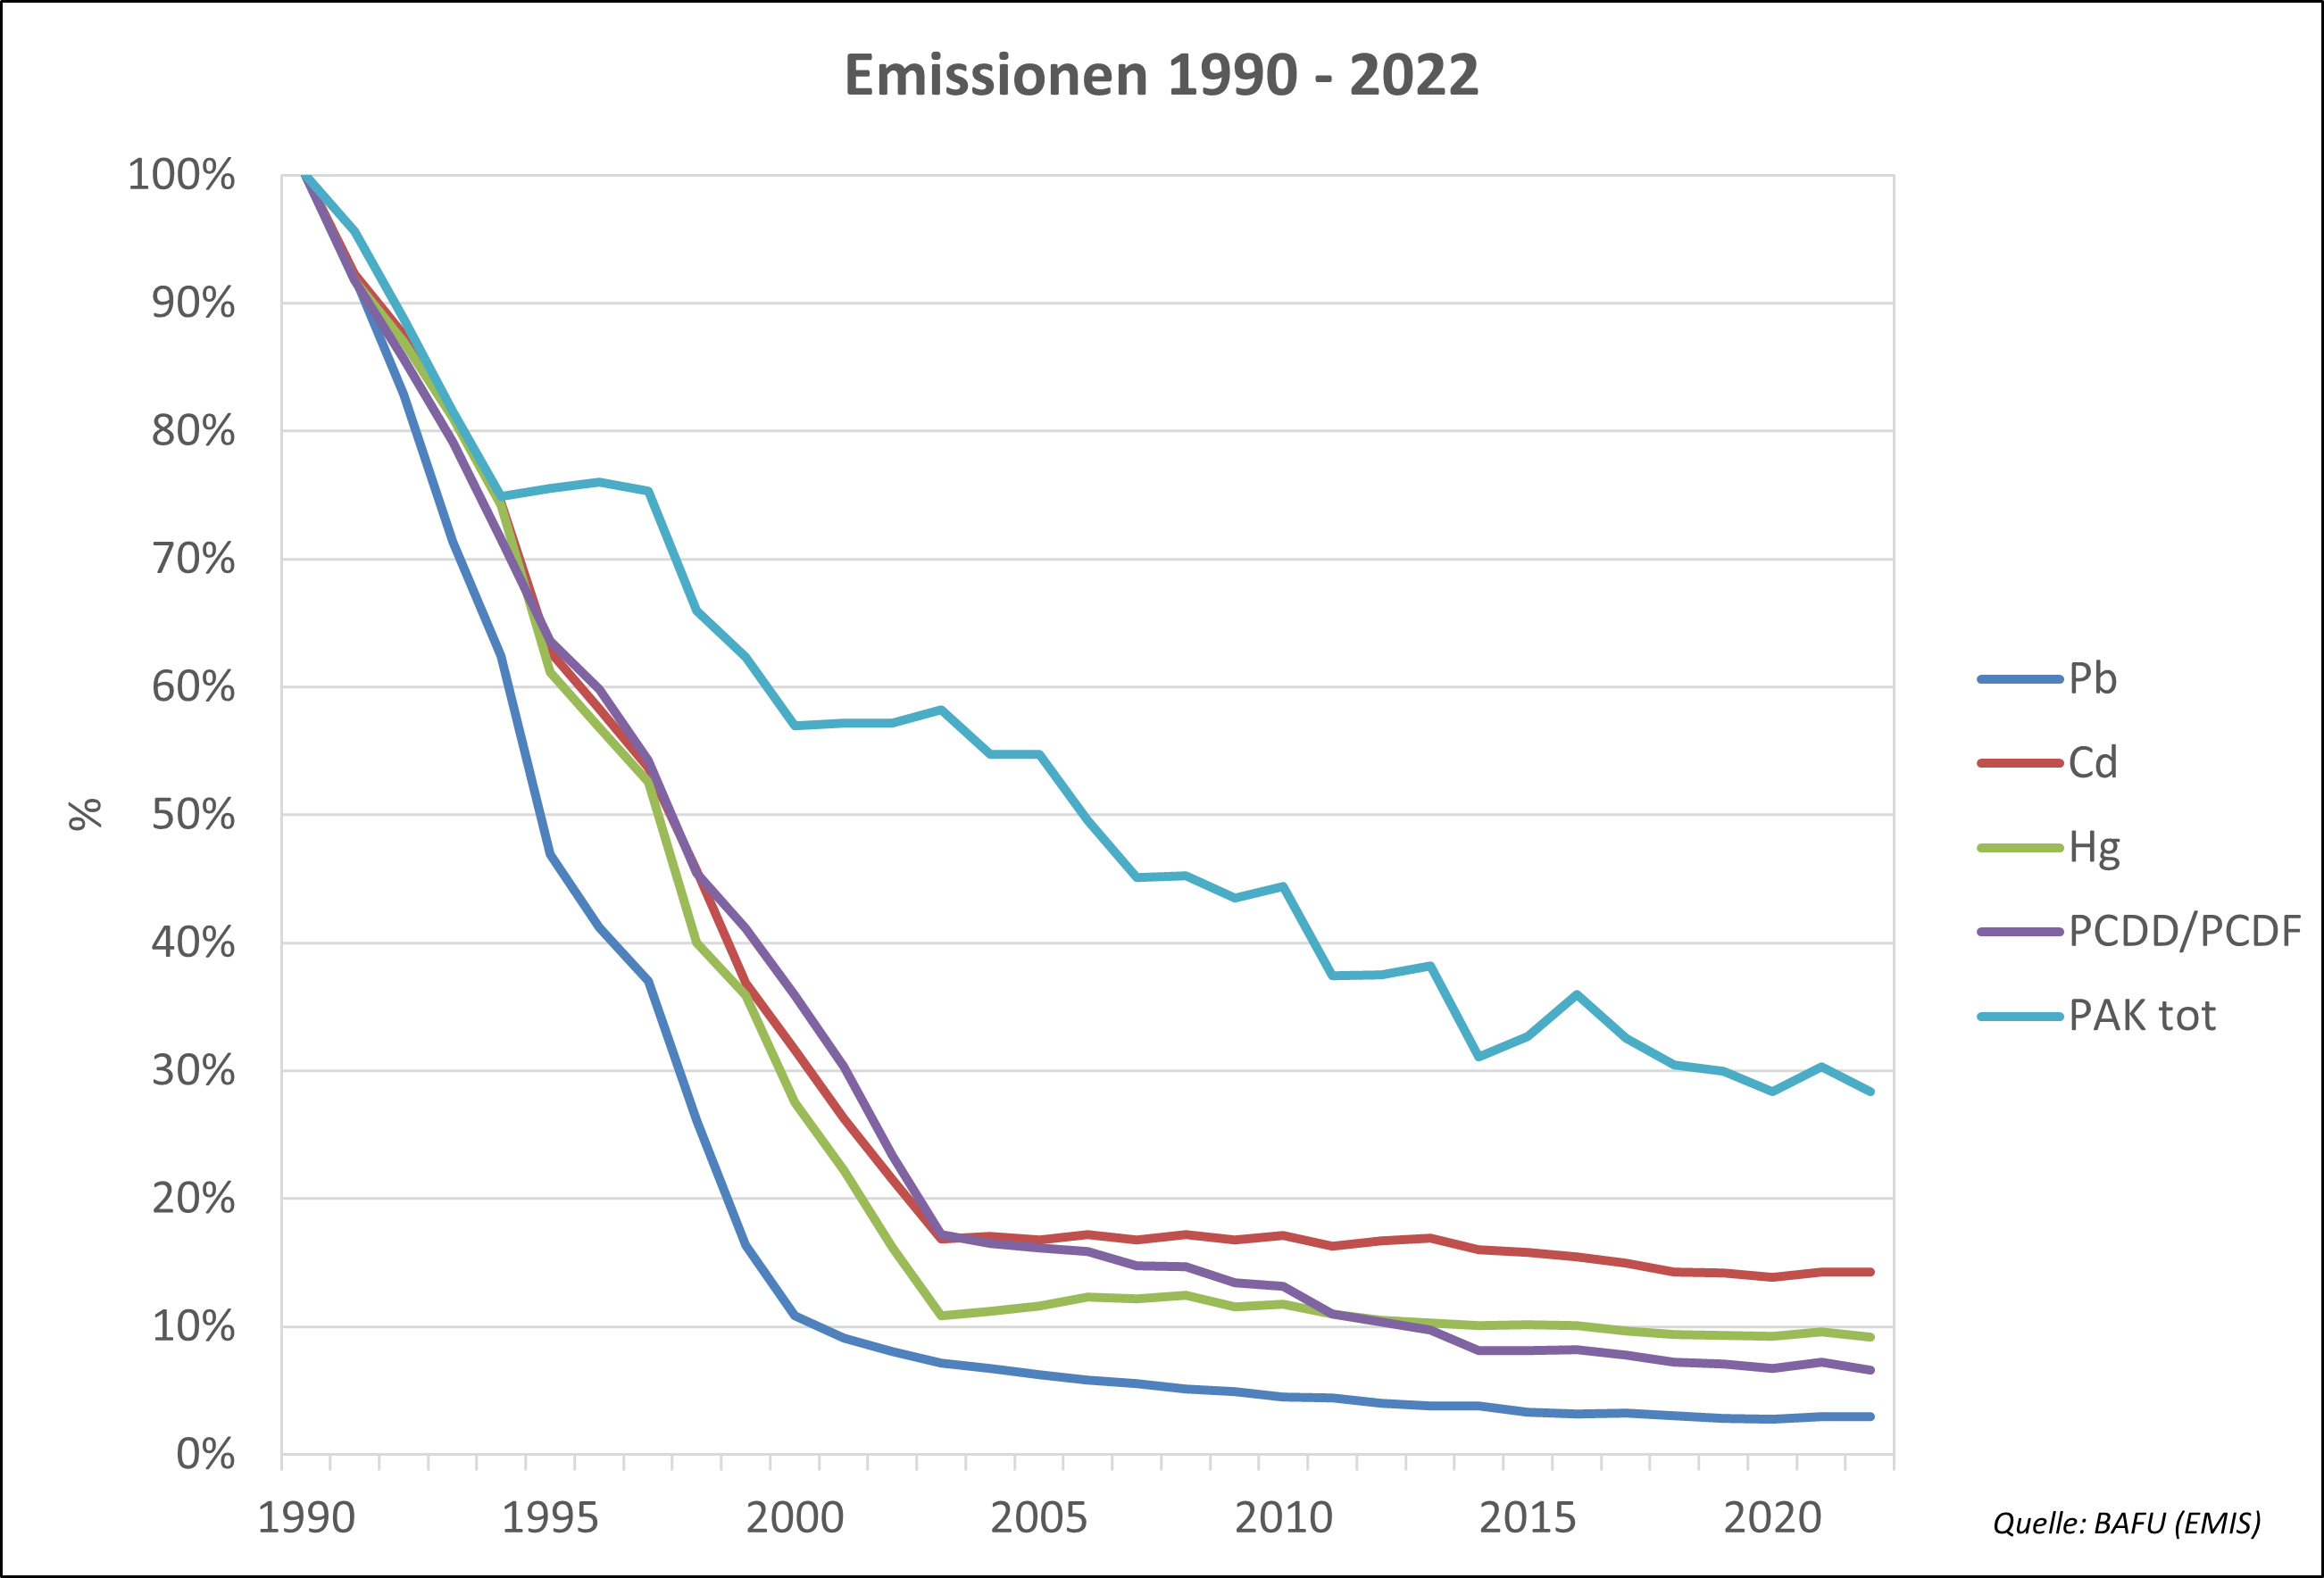 Verlauf der Emissionen 1990-2022 von Blei (Pb), Cadmium (Cd), Quecksilber (Hg), Dioxinen und Furanen (PCDD/PCDF), polyzyklischen aromatischen Kohlenwasserstoffen (PAK)